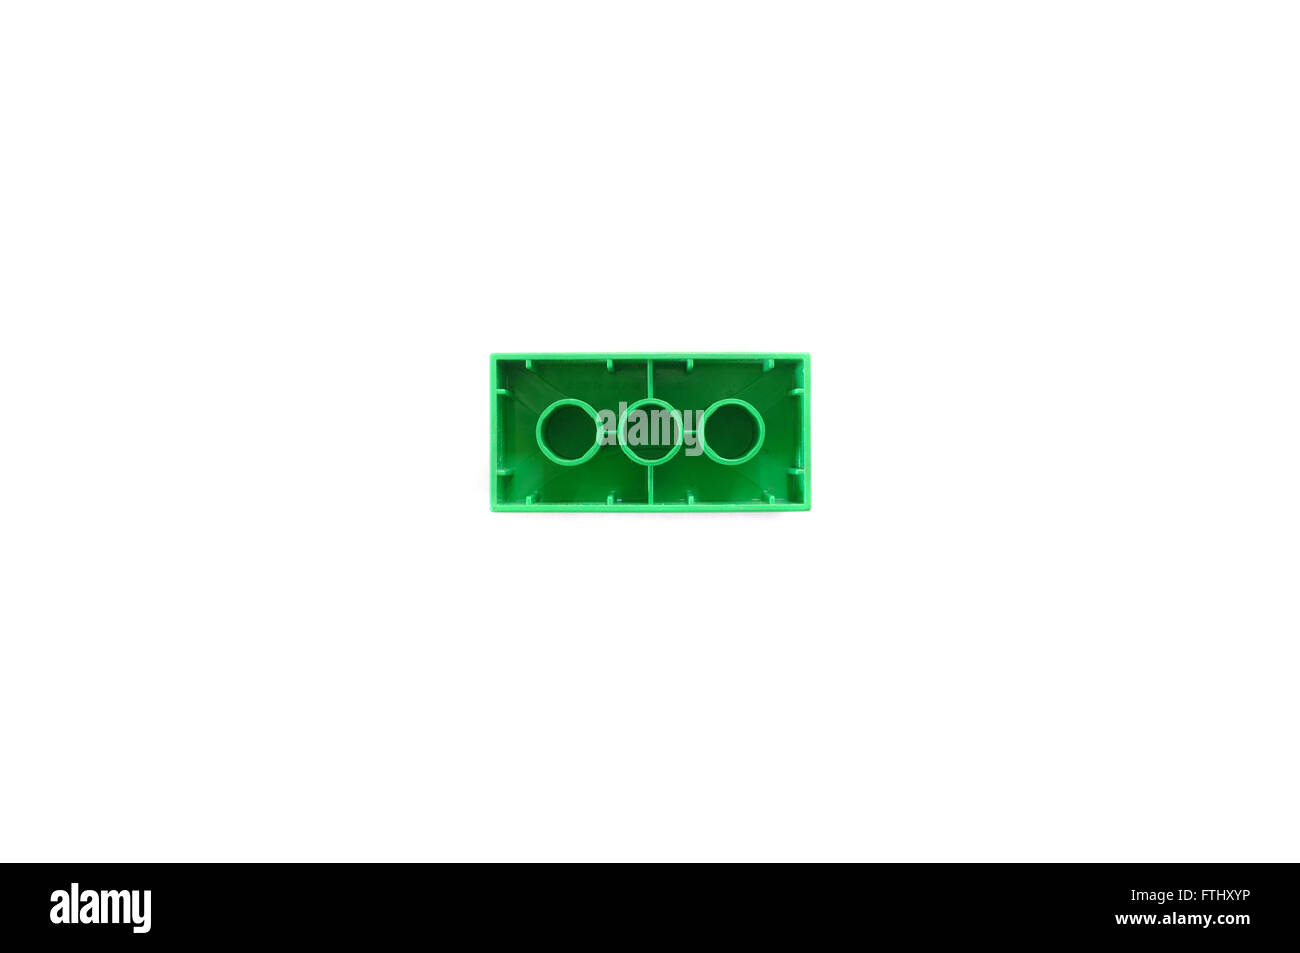 Eine Ansicht von unten der grünen 2 X 4 Lego-Stein vor weißem Hintergrund  fotografiert Stockfotografie - Alamy